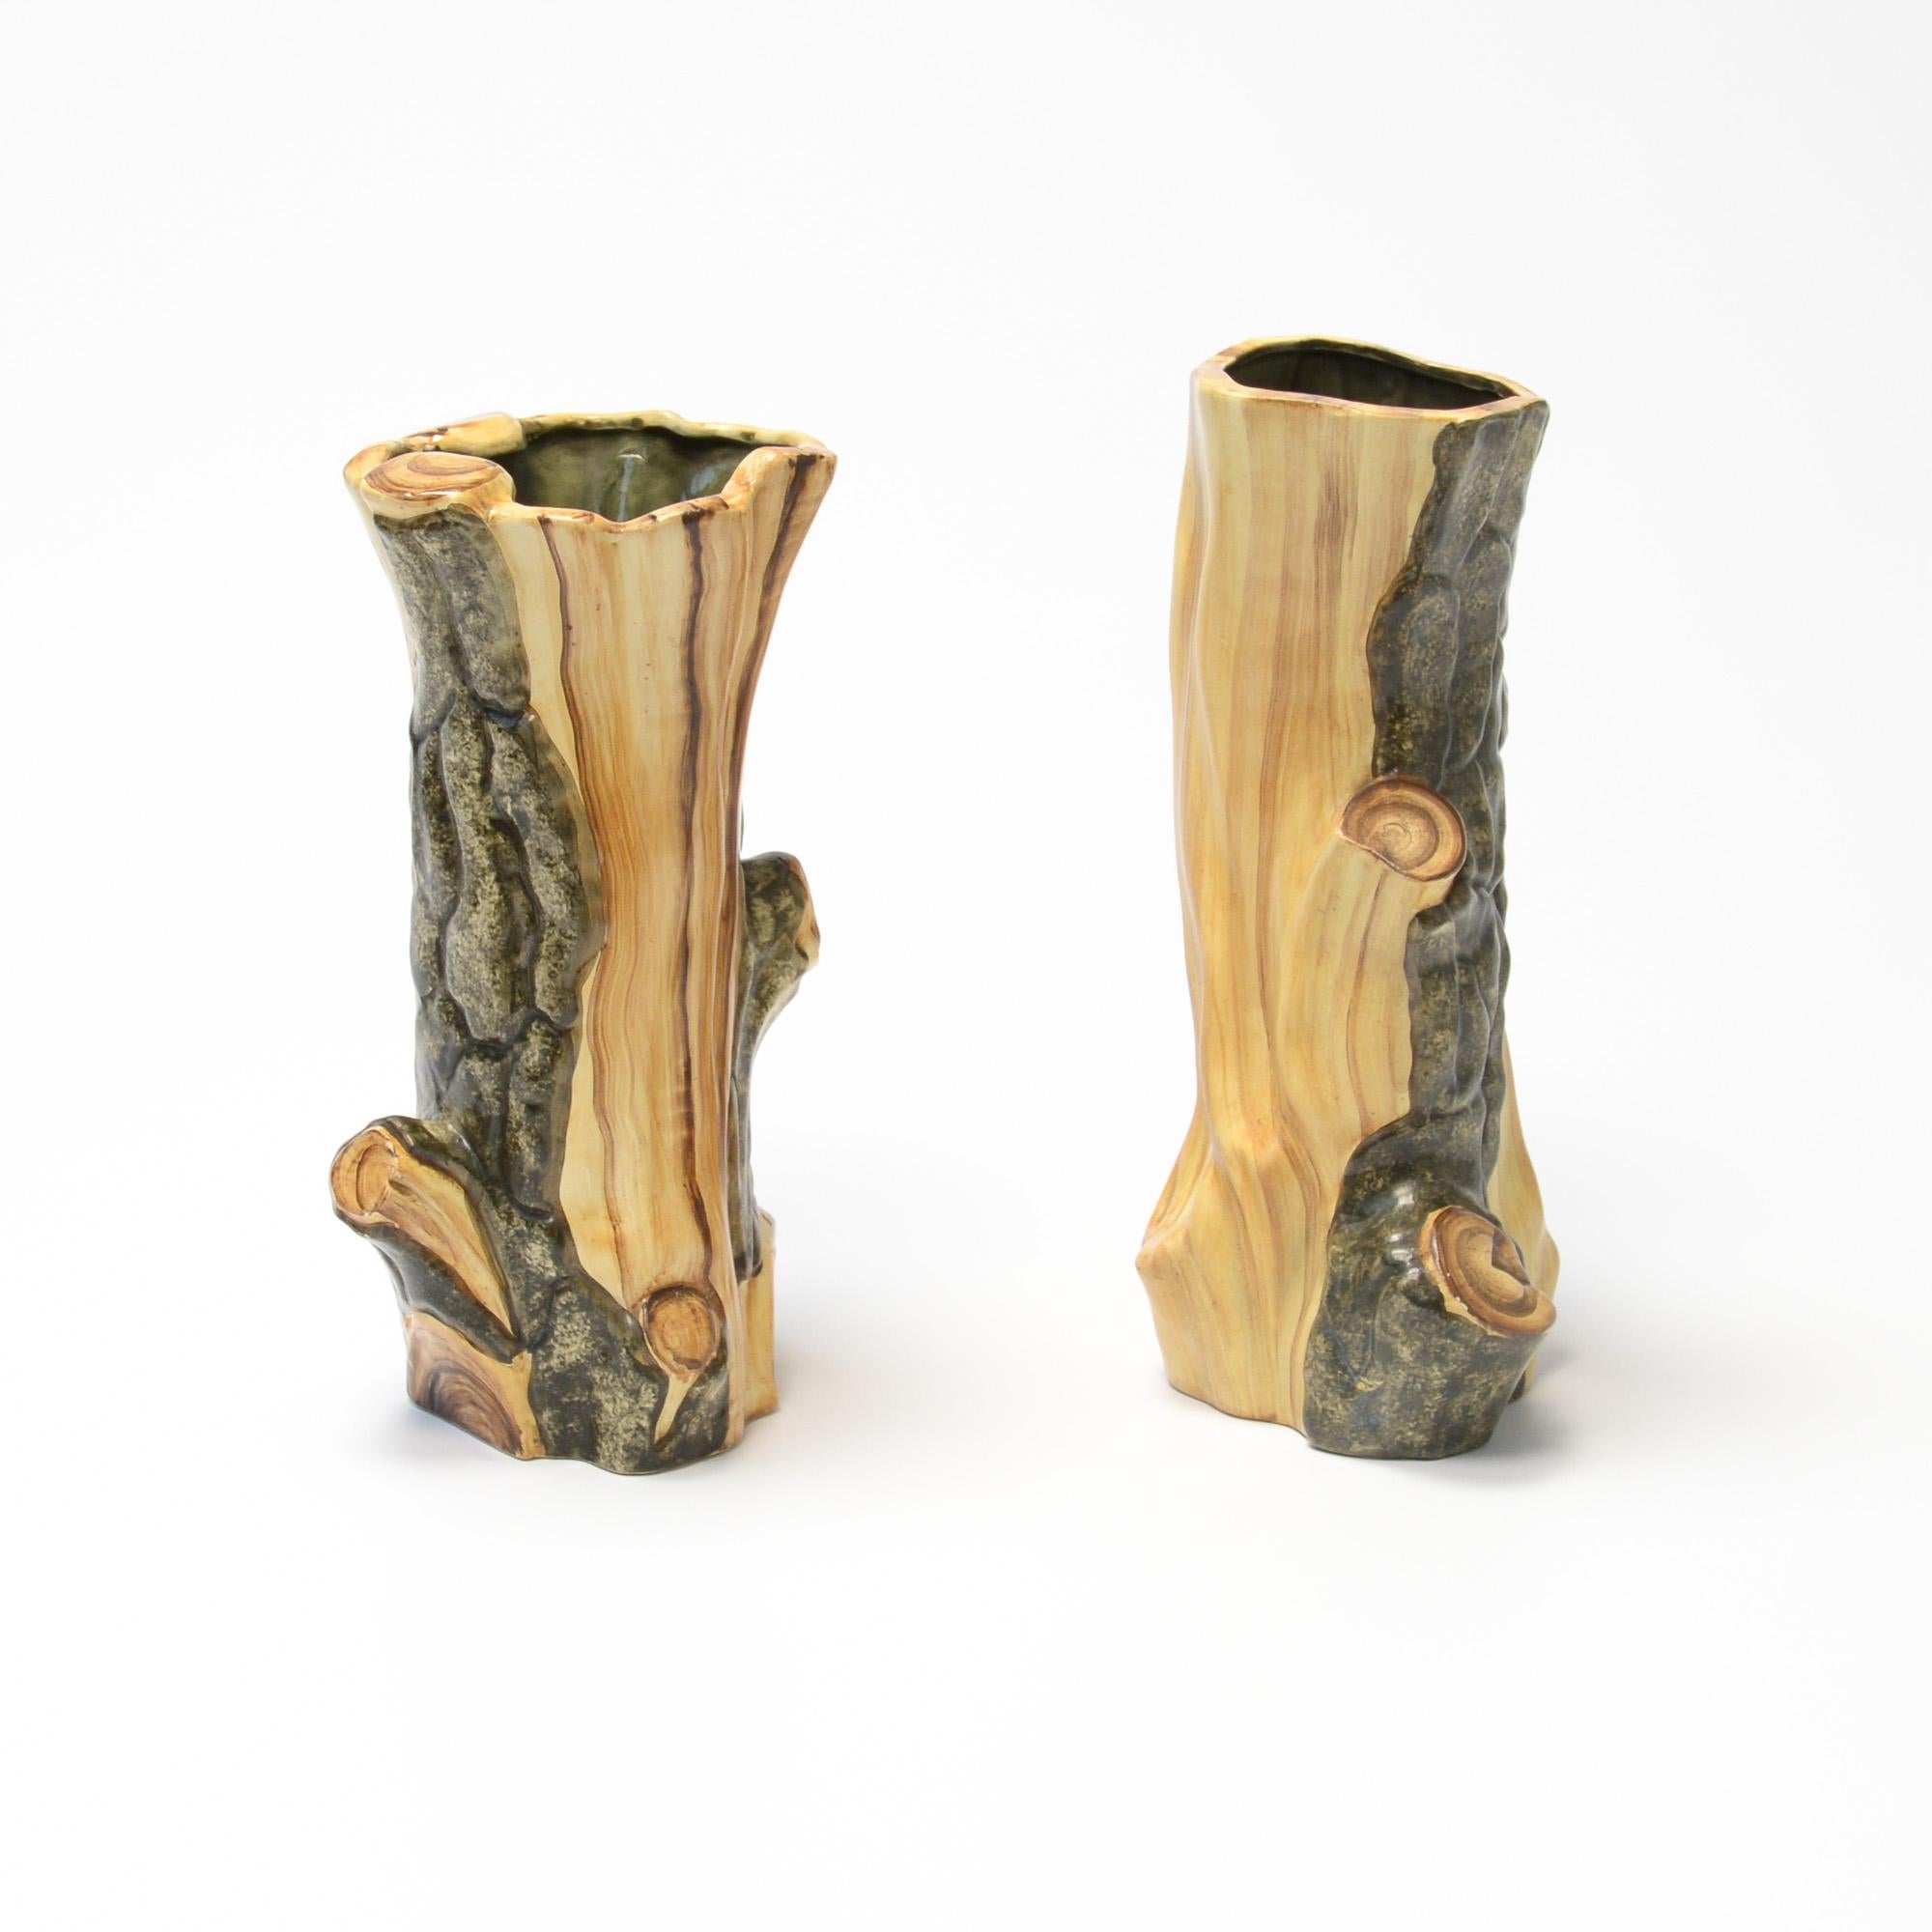 Diese dekorativen Vasen aus Bois faux sind mit der Marke Cérart versehen.
Diese Dekoration aus Holzimitat war in den 1950er Jahren sehr in Mode und wurde von der Werkstatt Granjean-Jourdan in Vallauris hergestellt. Diese Werkstatt fertigte auch für